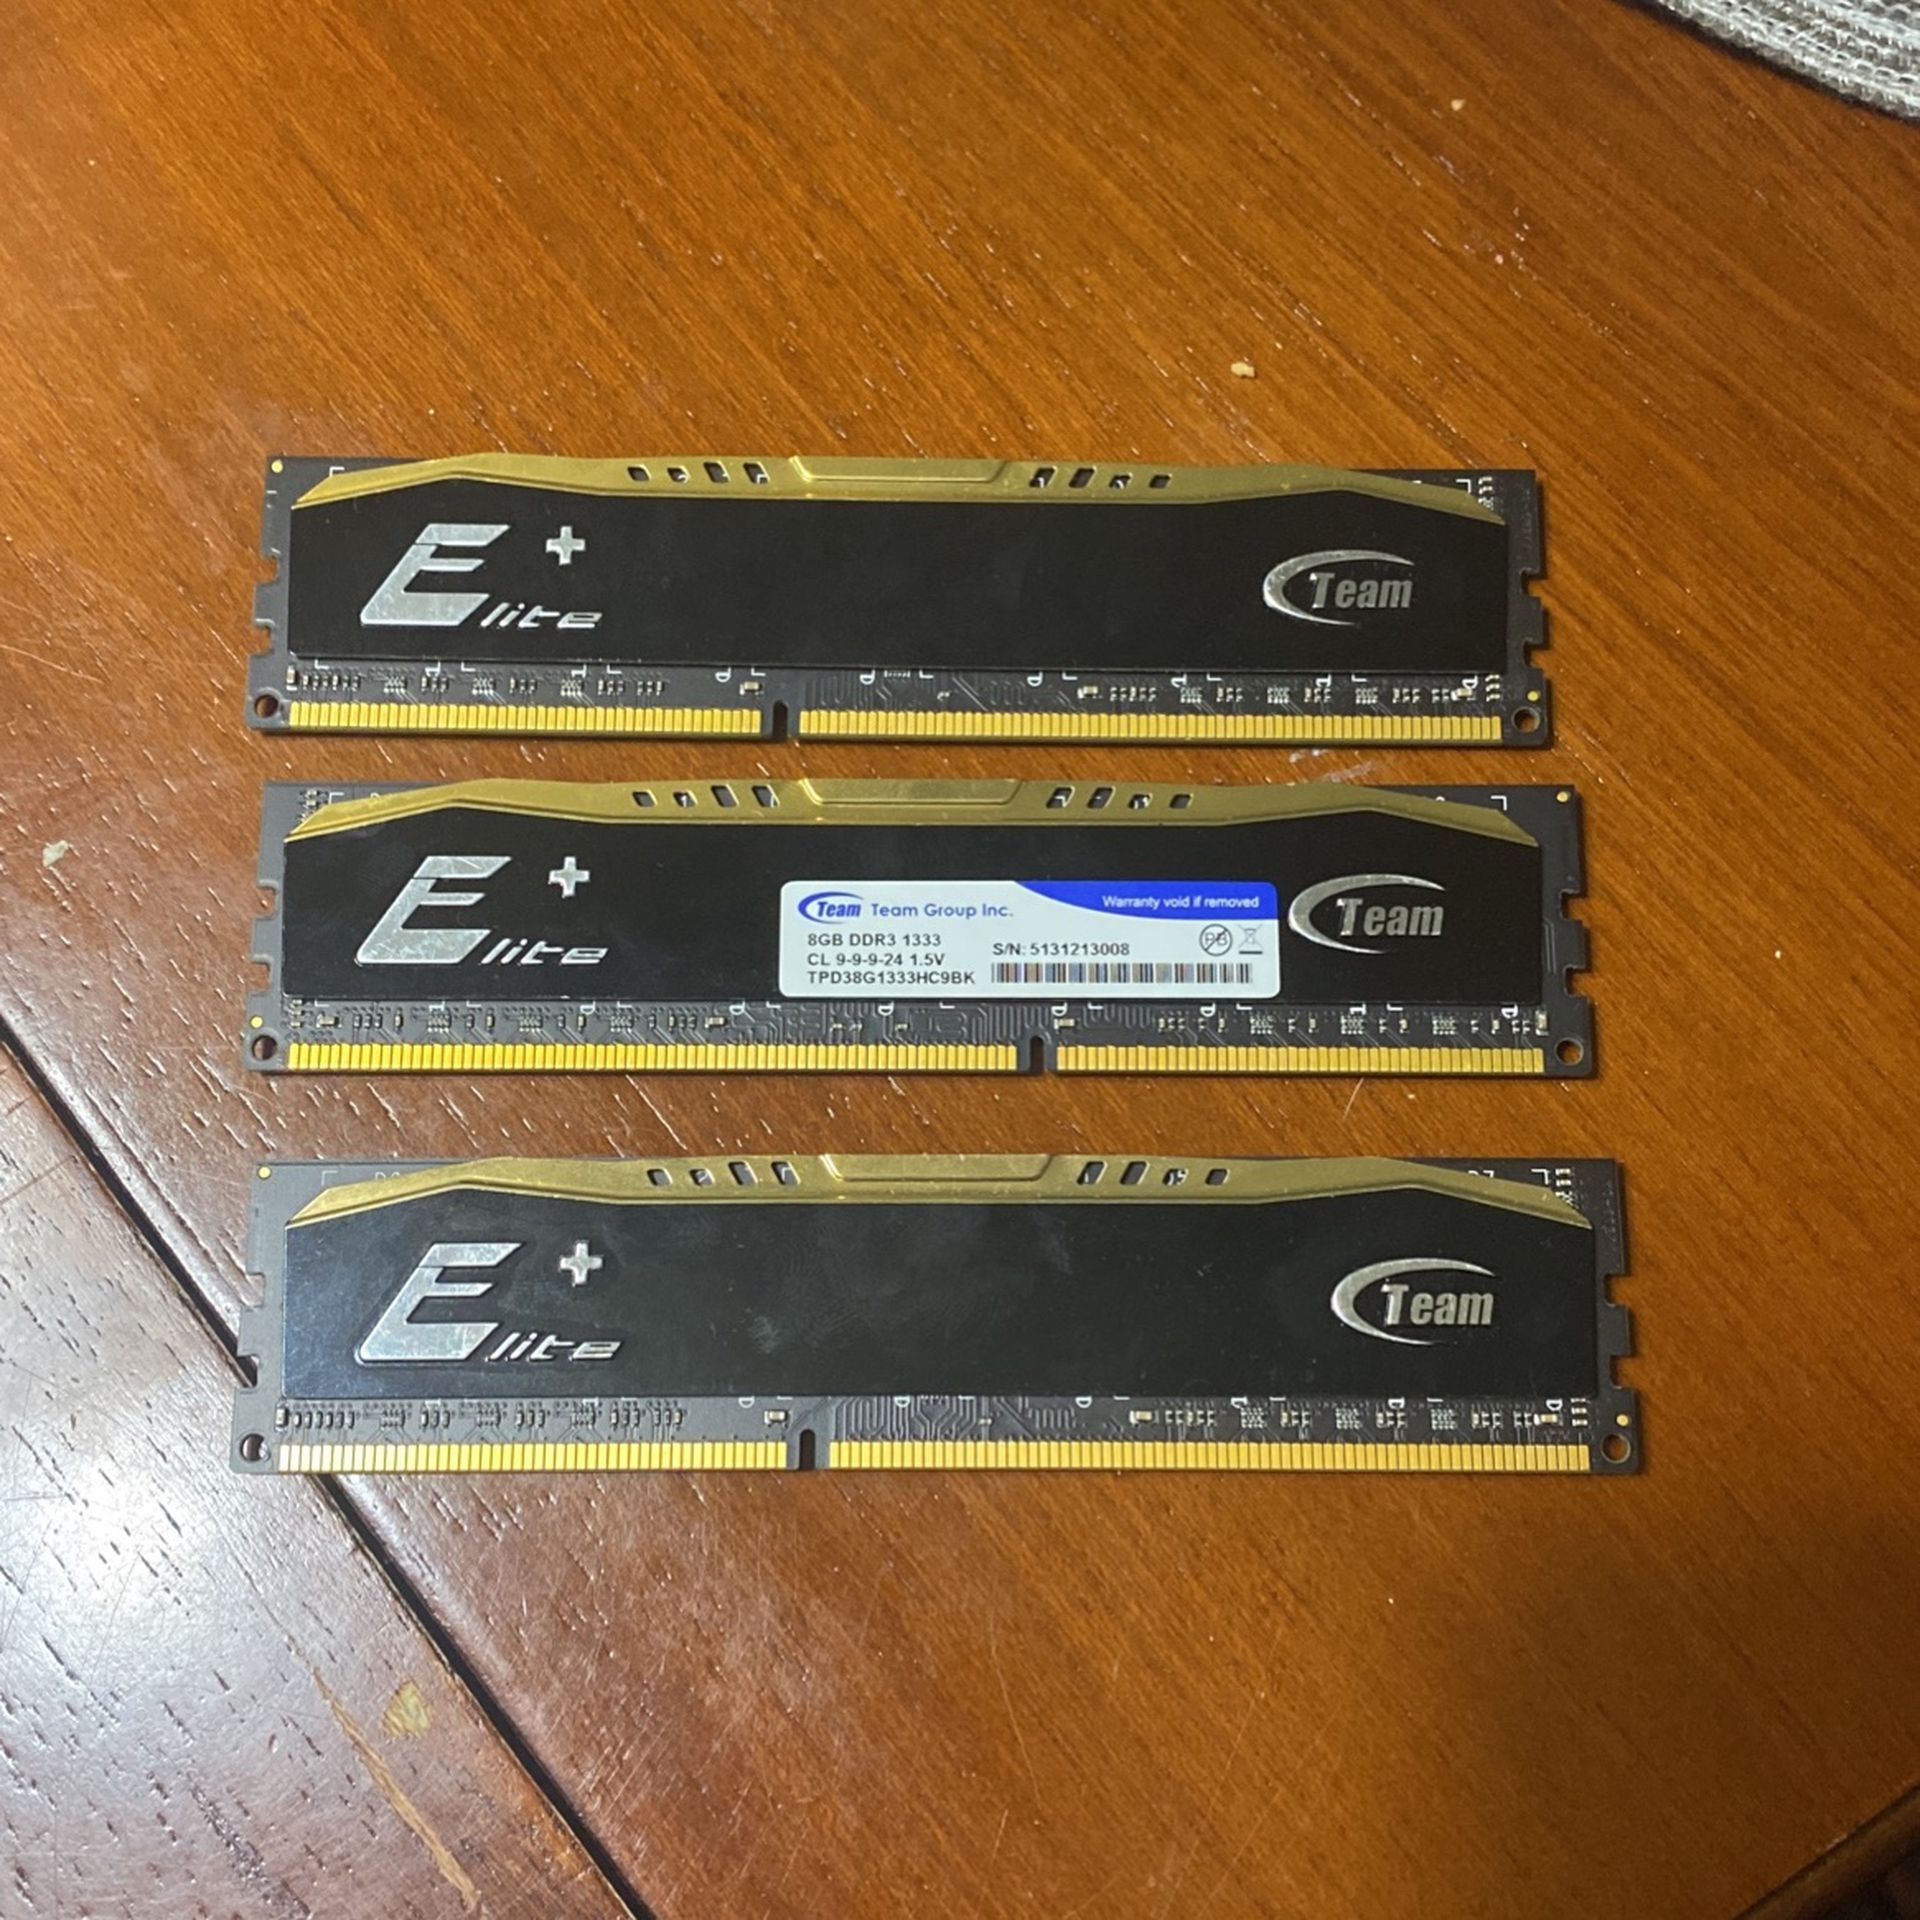 3x 8gb Team Elite+ DDR3 RAM